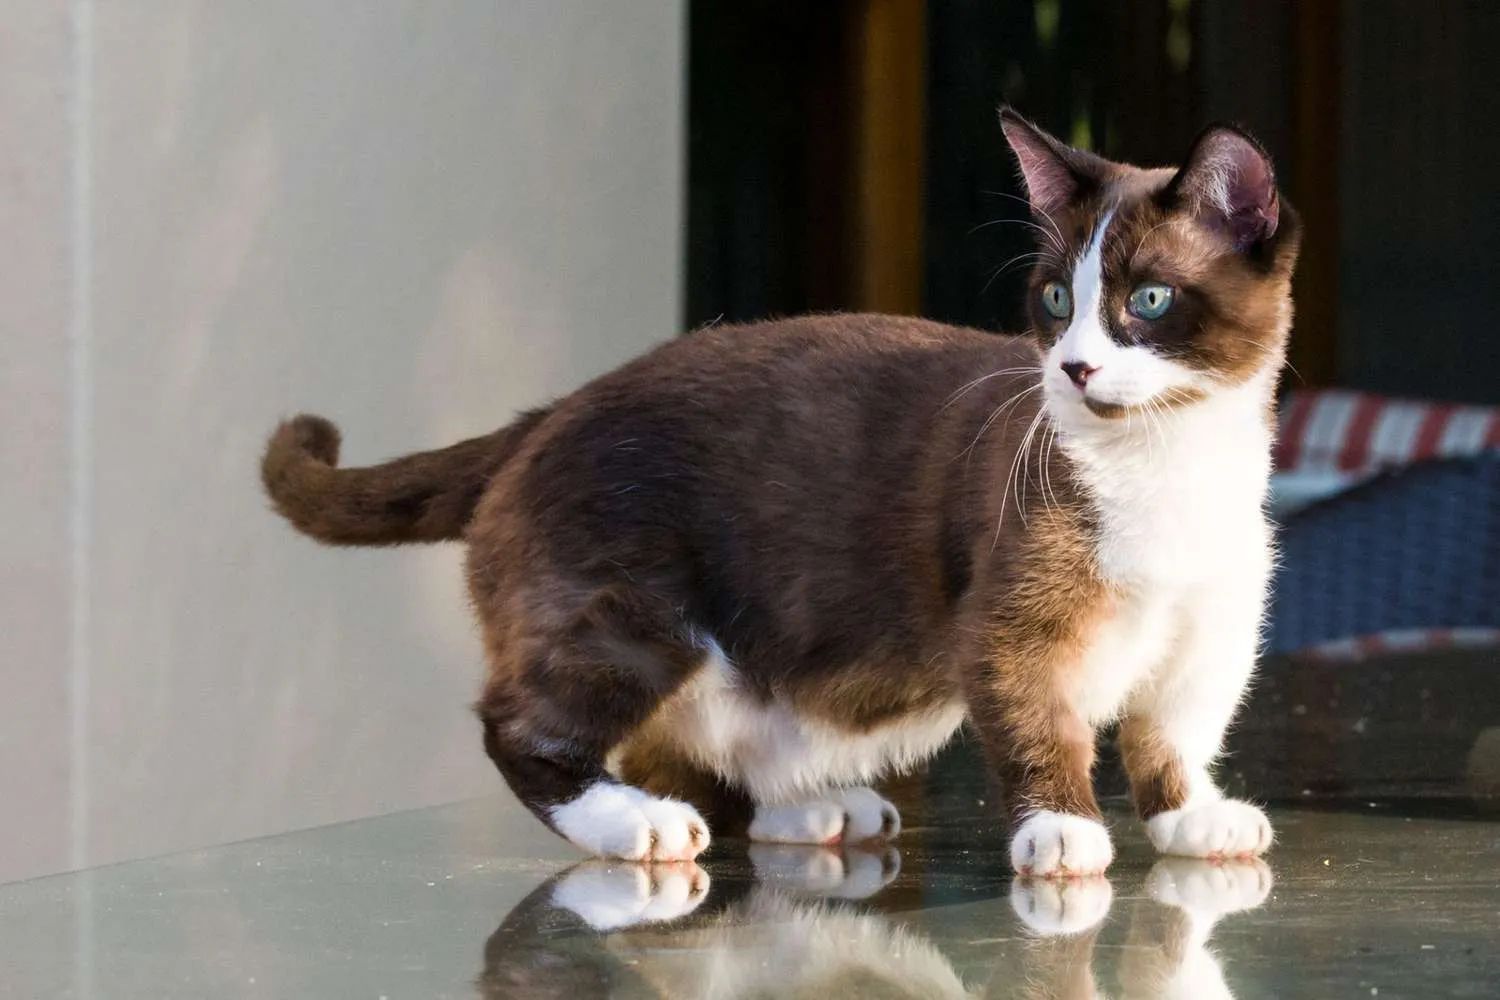 munchkin cat standing